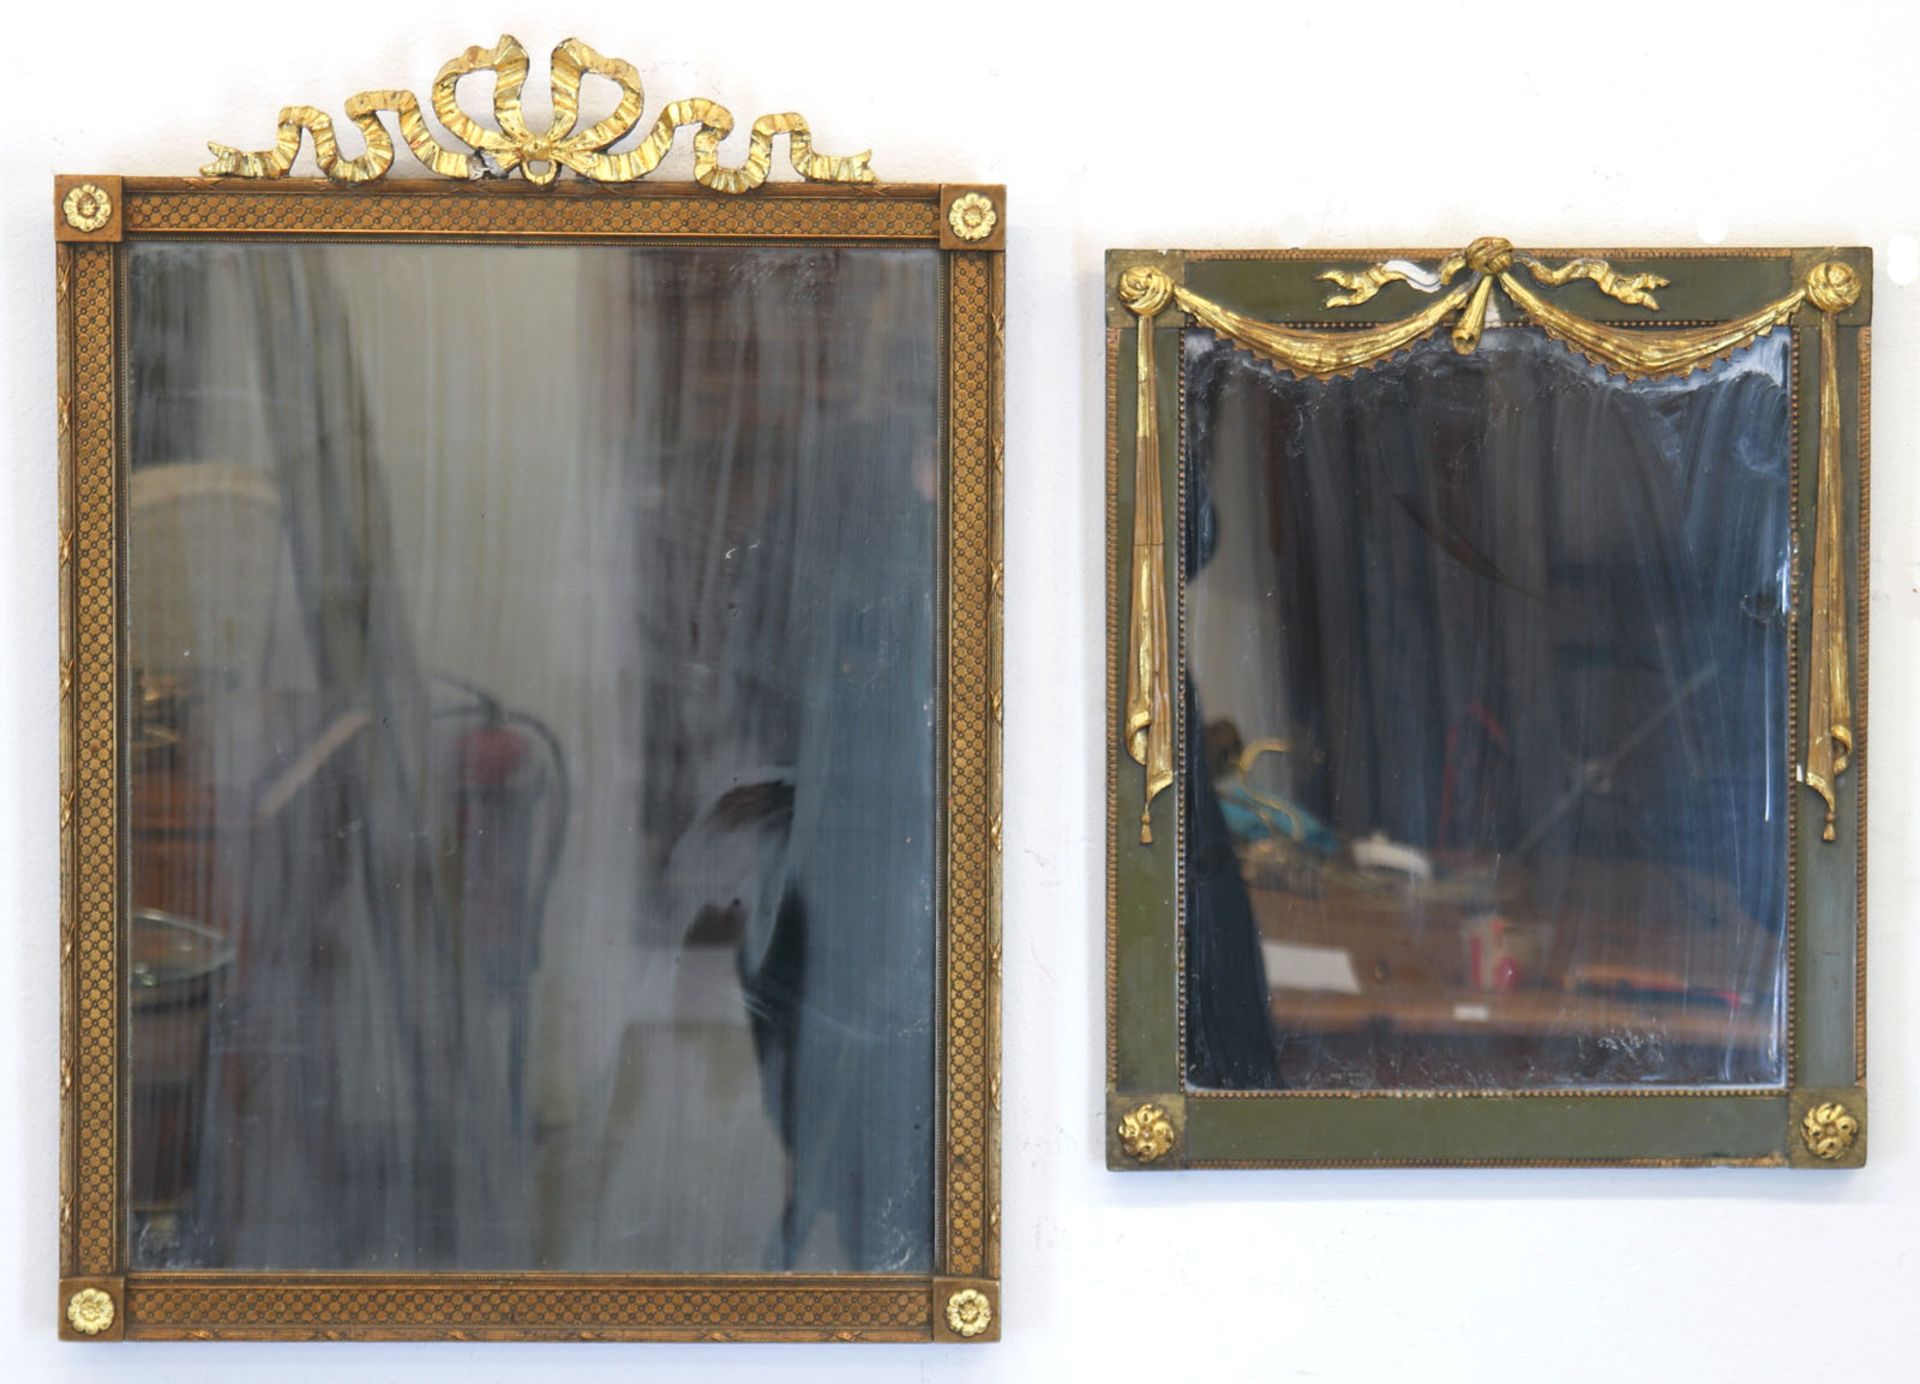 2 Spiegel im Empirestil, Holz mit vergoldeten Stuckverzierungen, 64x67x3 cm und 46x38x3 cm